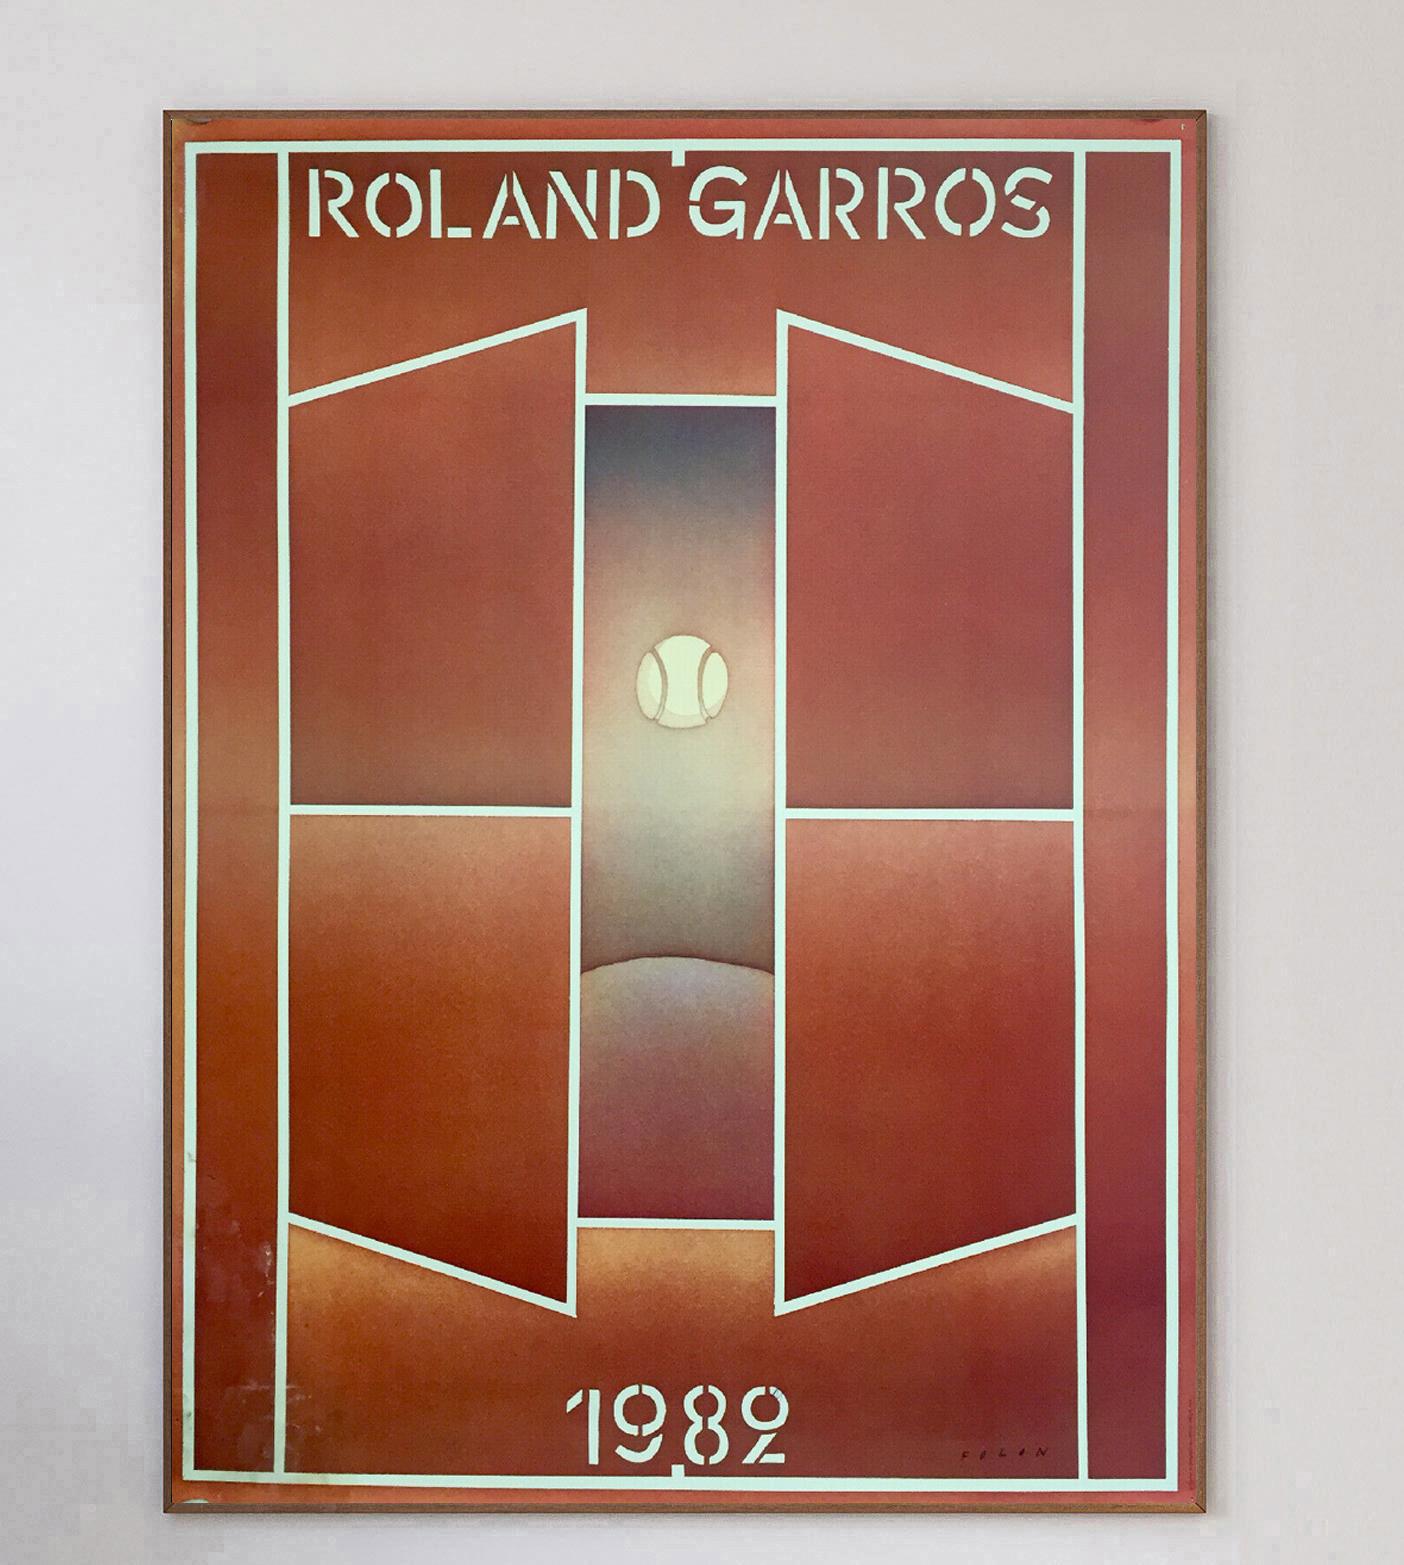 Les Internationaux de France de 1982 sont un tournoi de tennis qui s'est déroulé sur les courts extérieurs en terre battue du Stade Roland Garros à Paris, en France. Le tournoi s'est déroulé de fin mai à début juin. Il s'agit de la 86e édition des